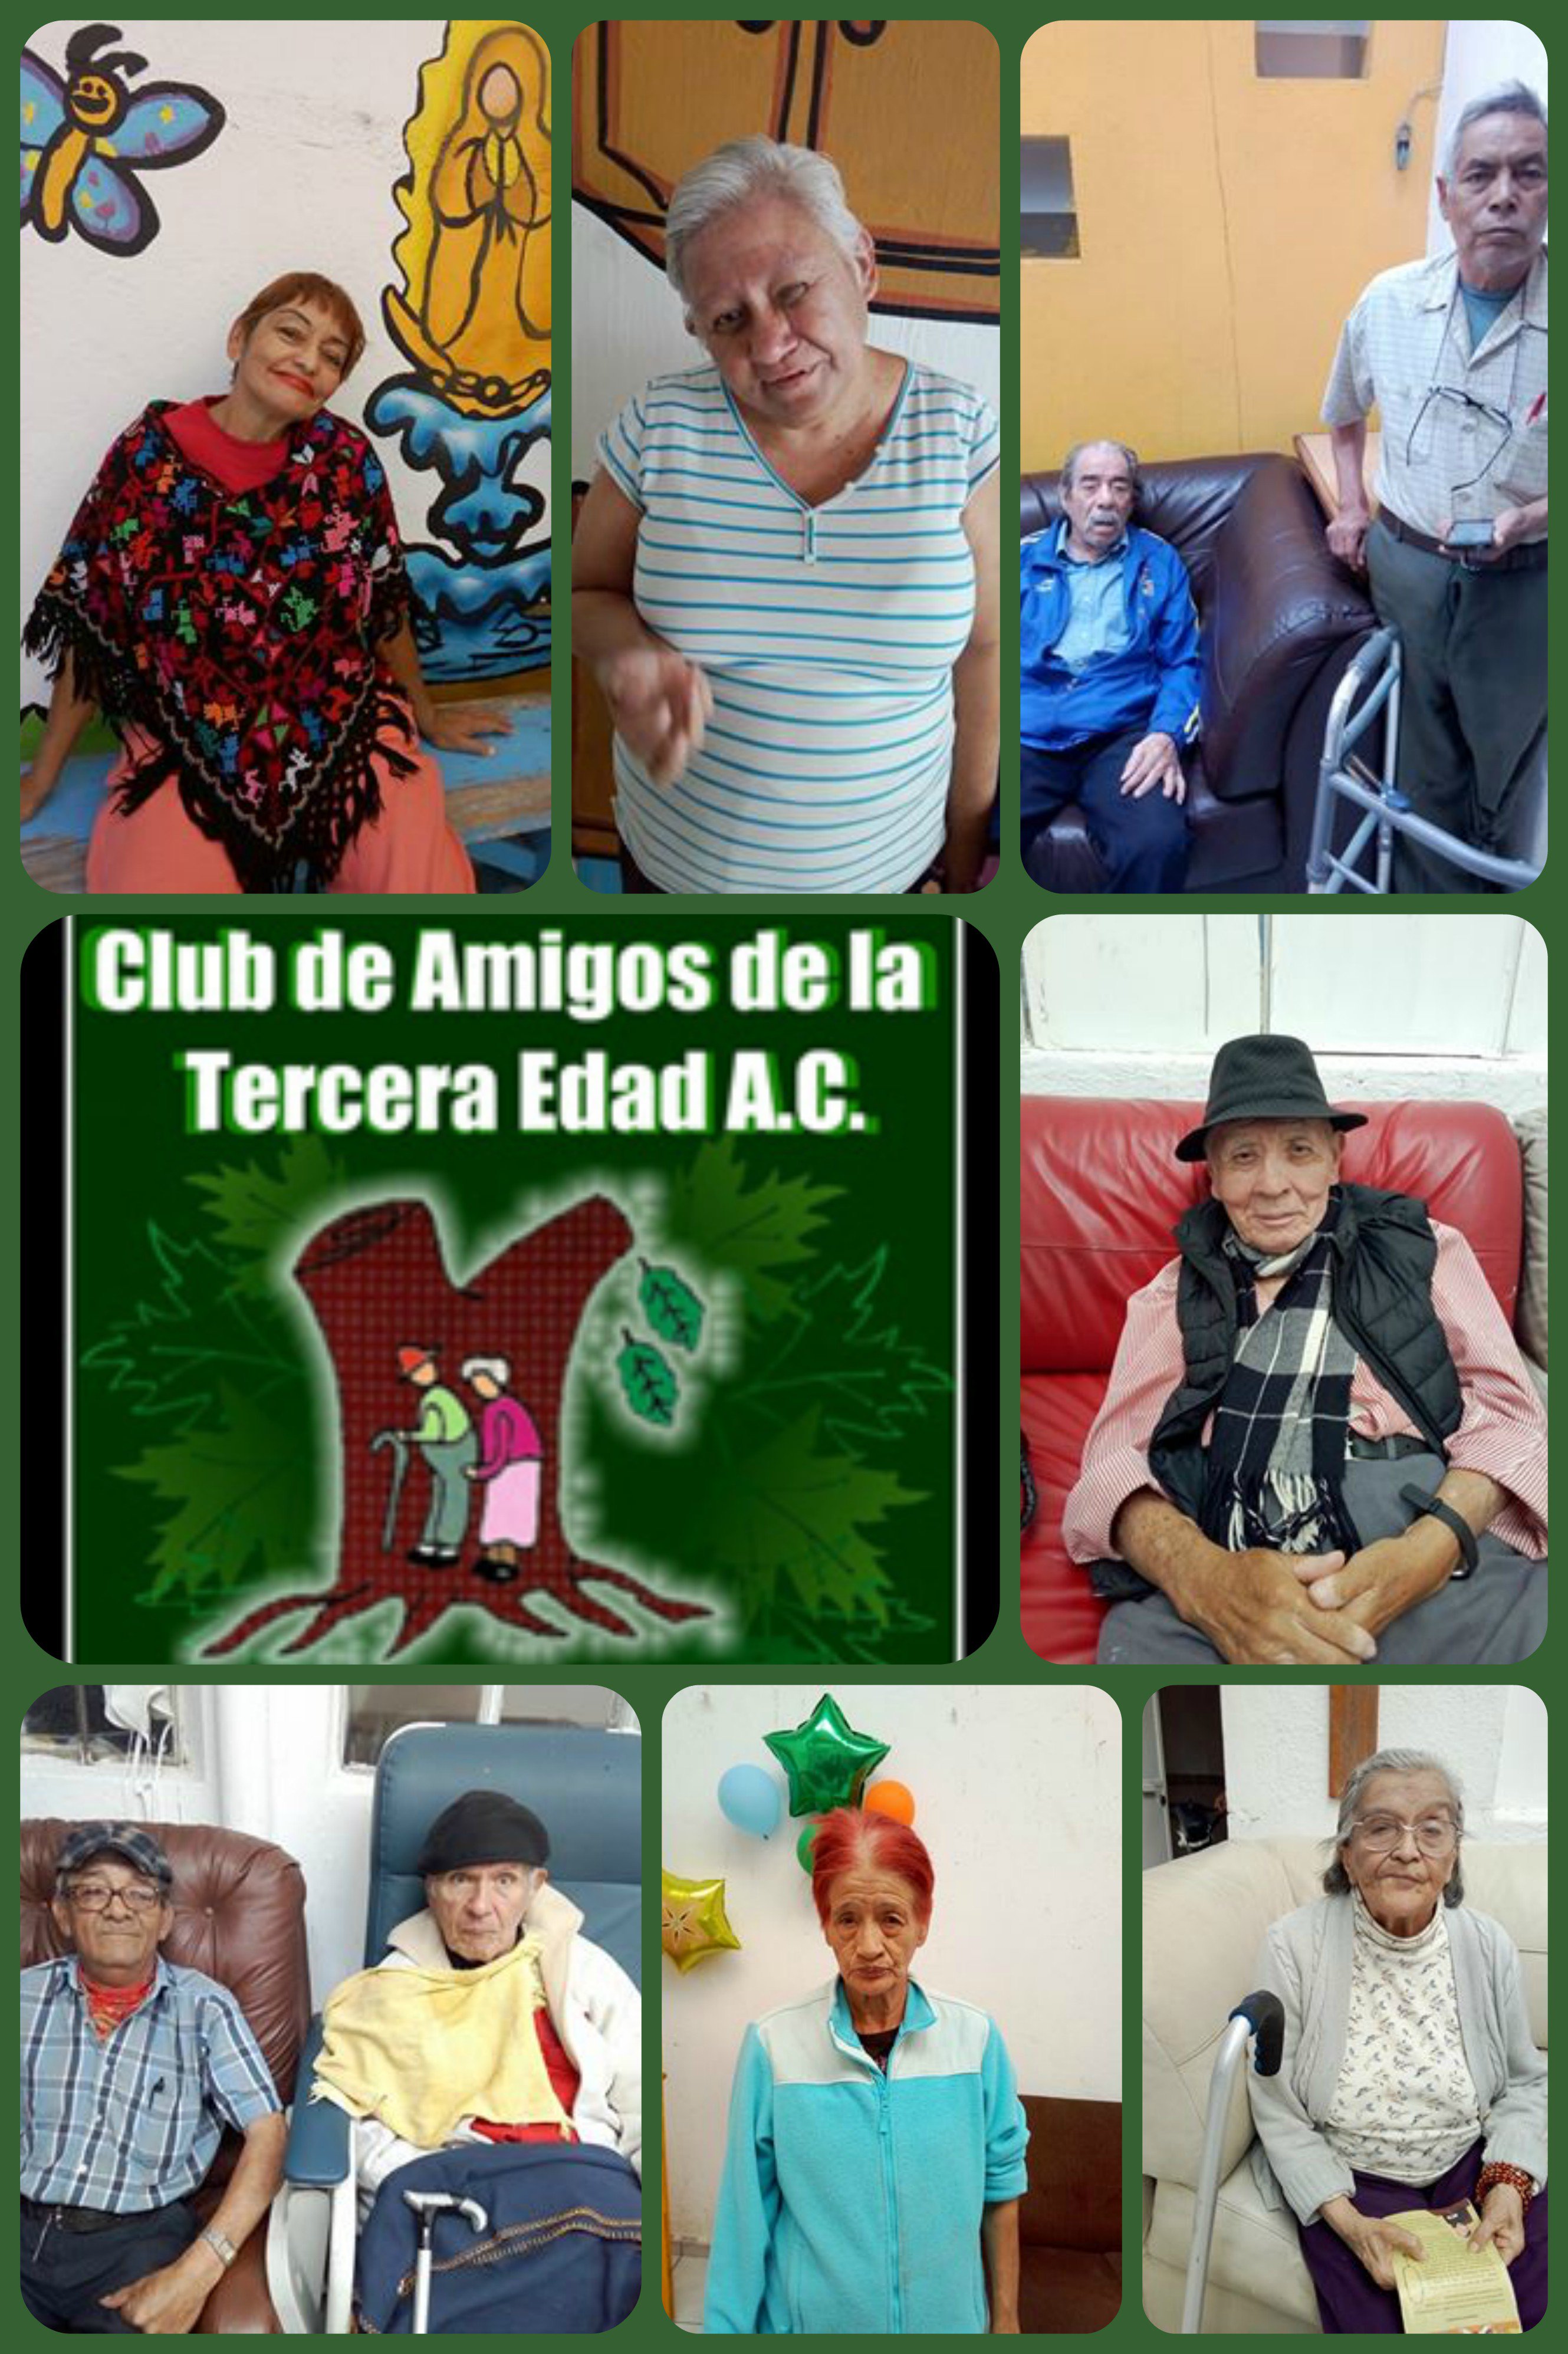 Club de Amigos de la Tercera Edad,  (@Asilo3era) / Twitter